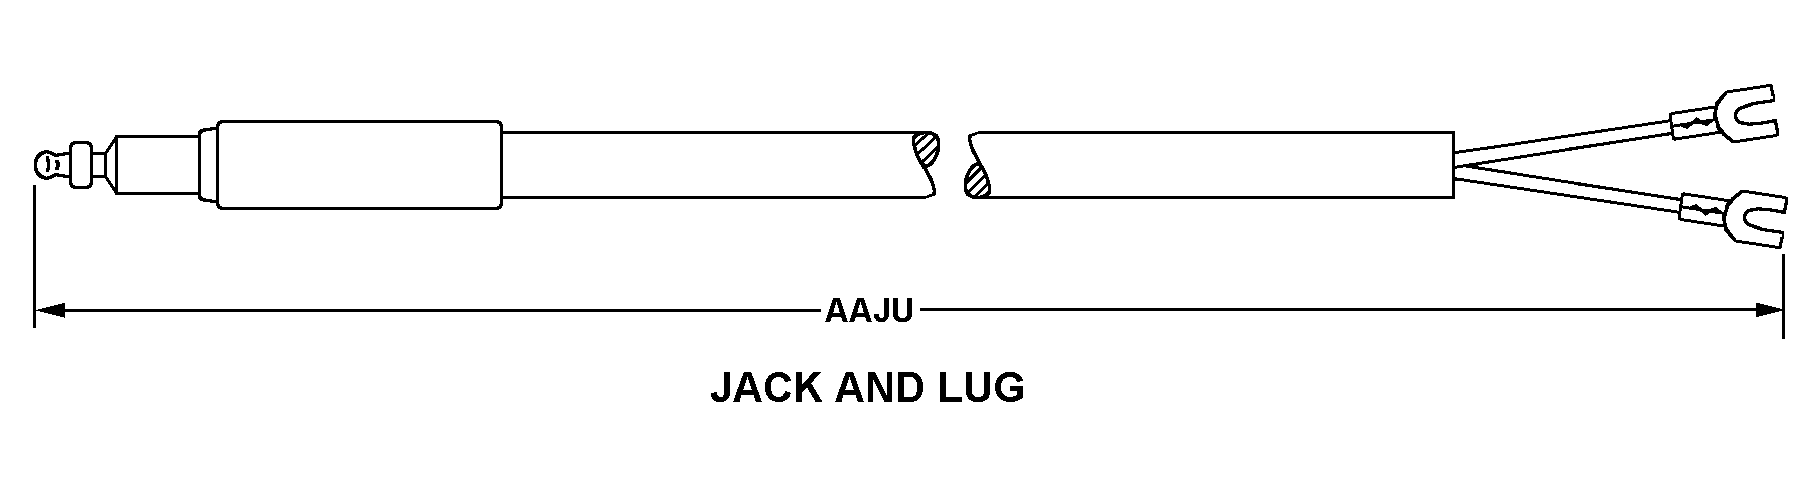 JACK AND LUG style nsn 6150-01-046-2134